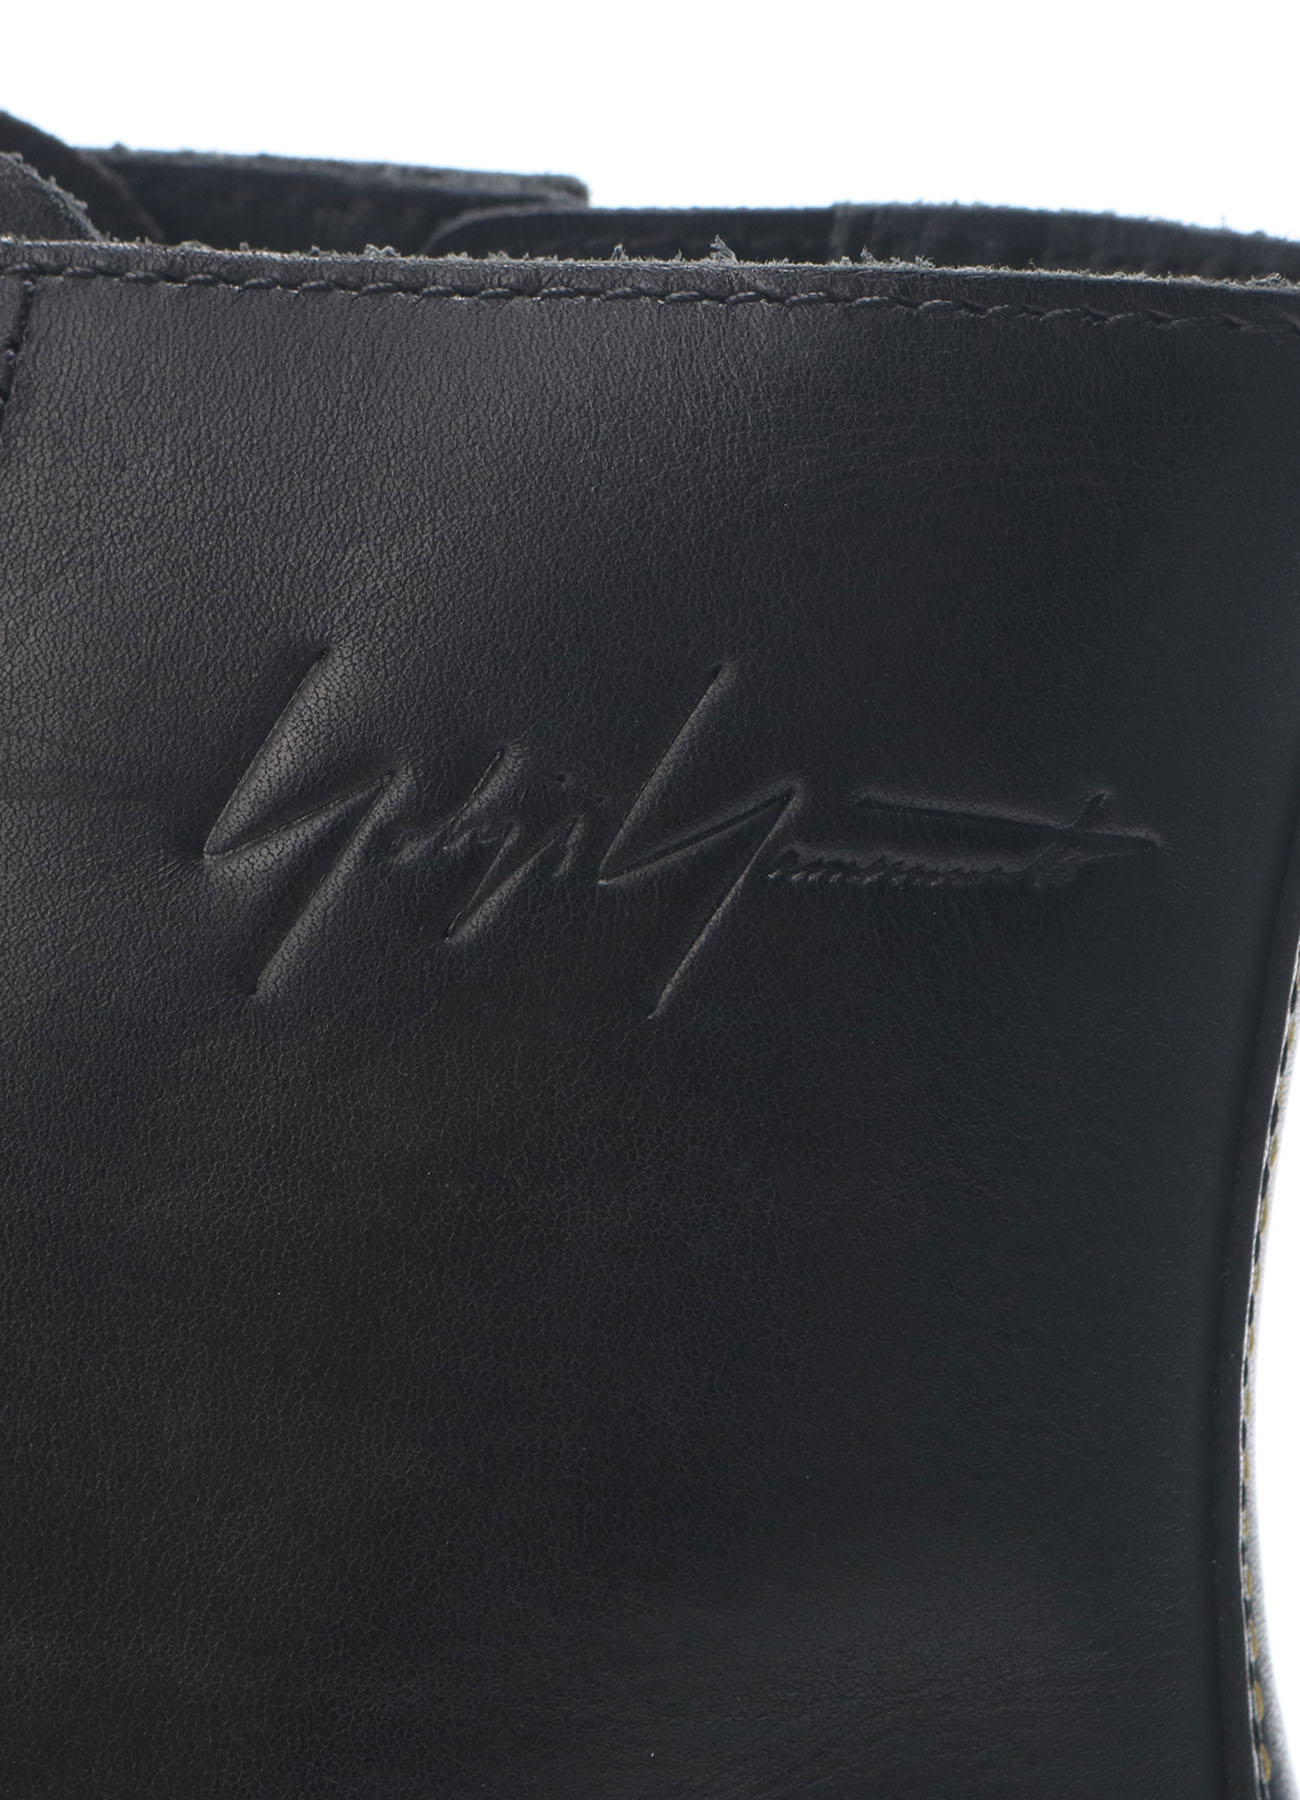 Yohji Yamamoto × Dr.Martens BLACK TEMPARY TARIAN BOOTS